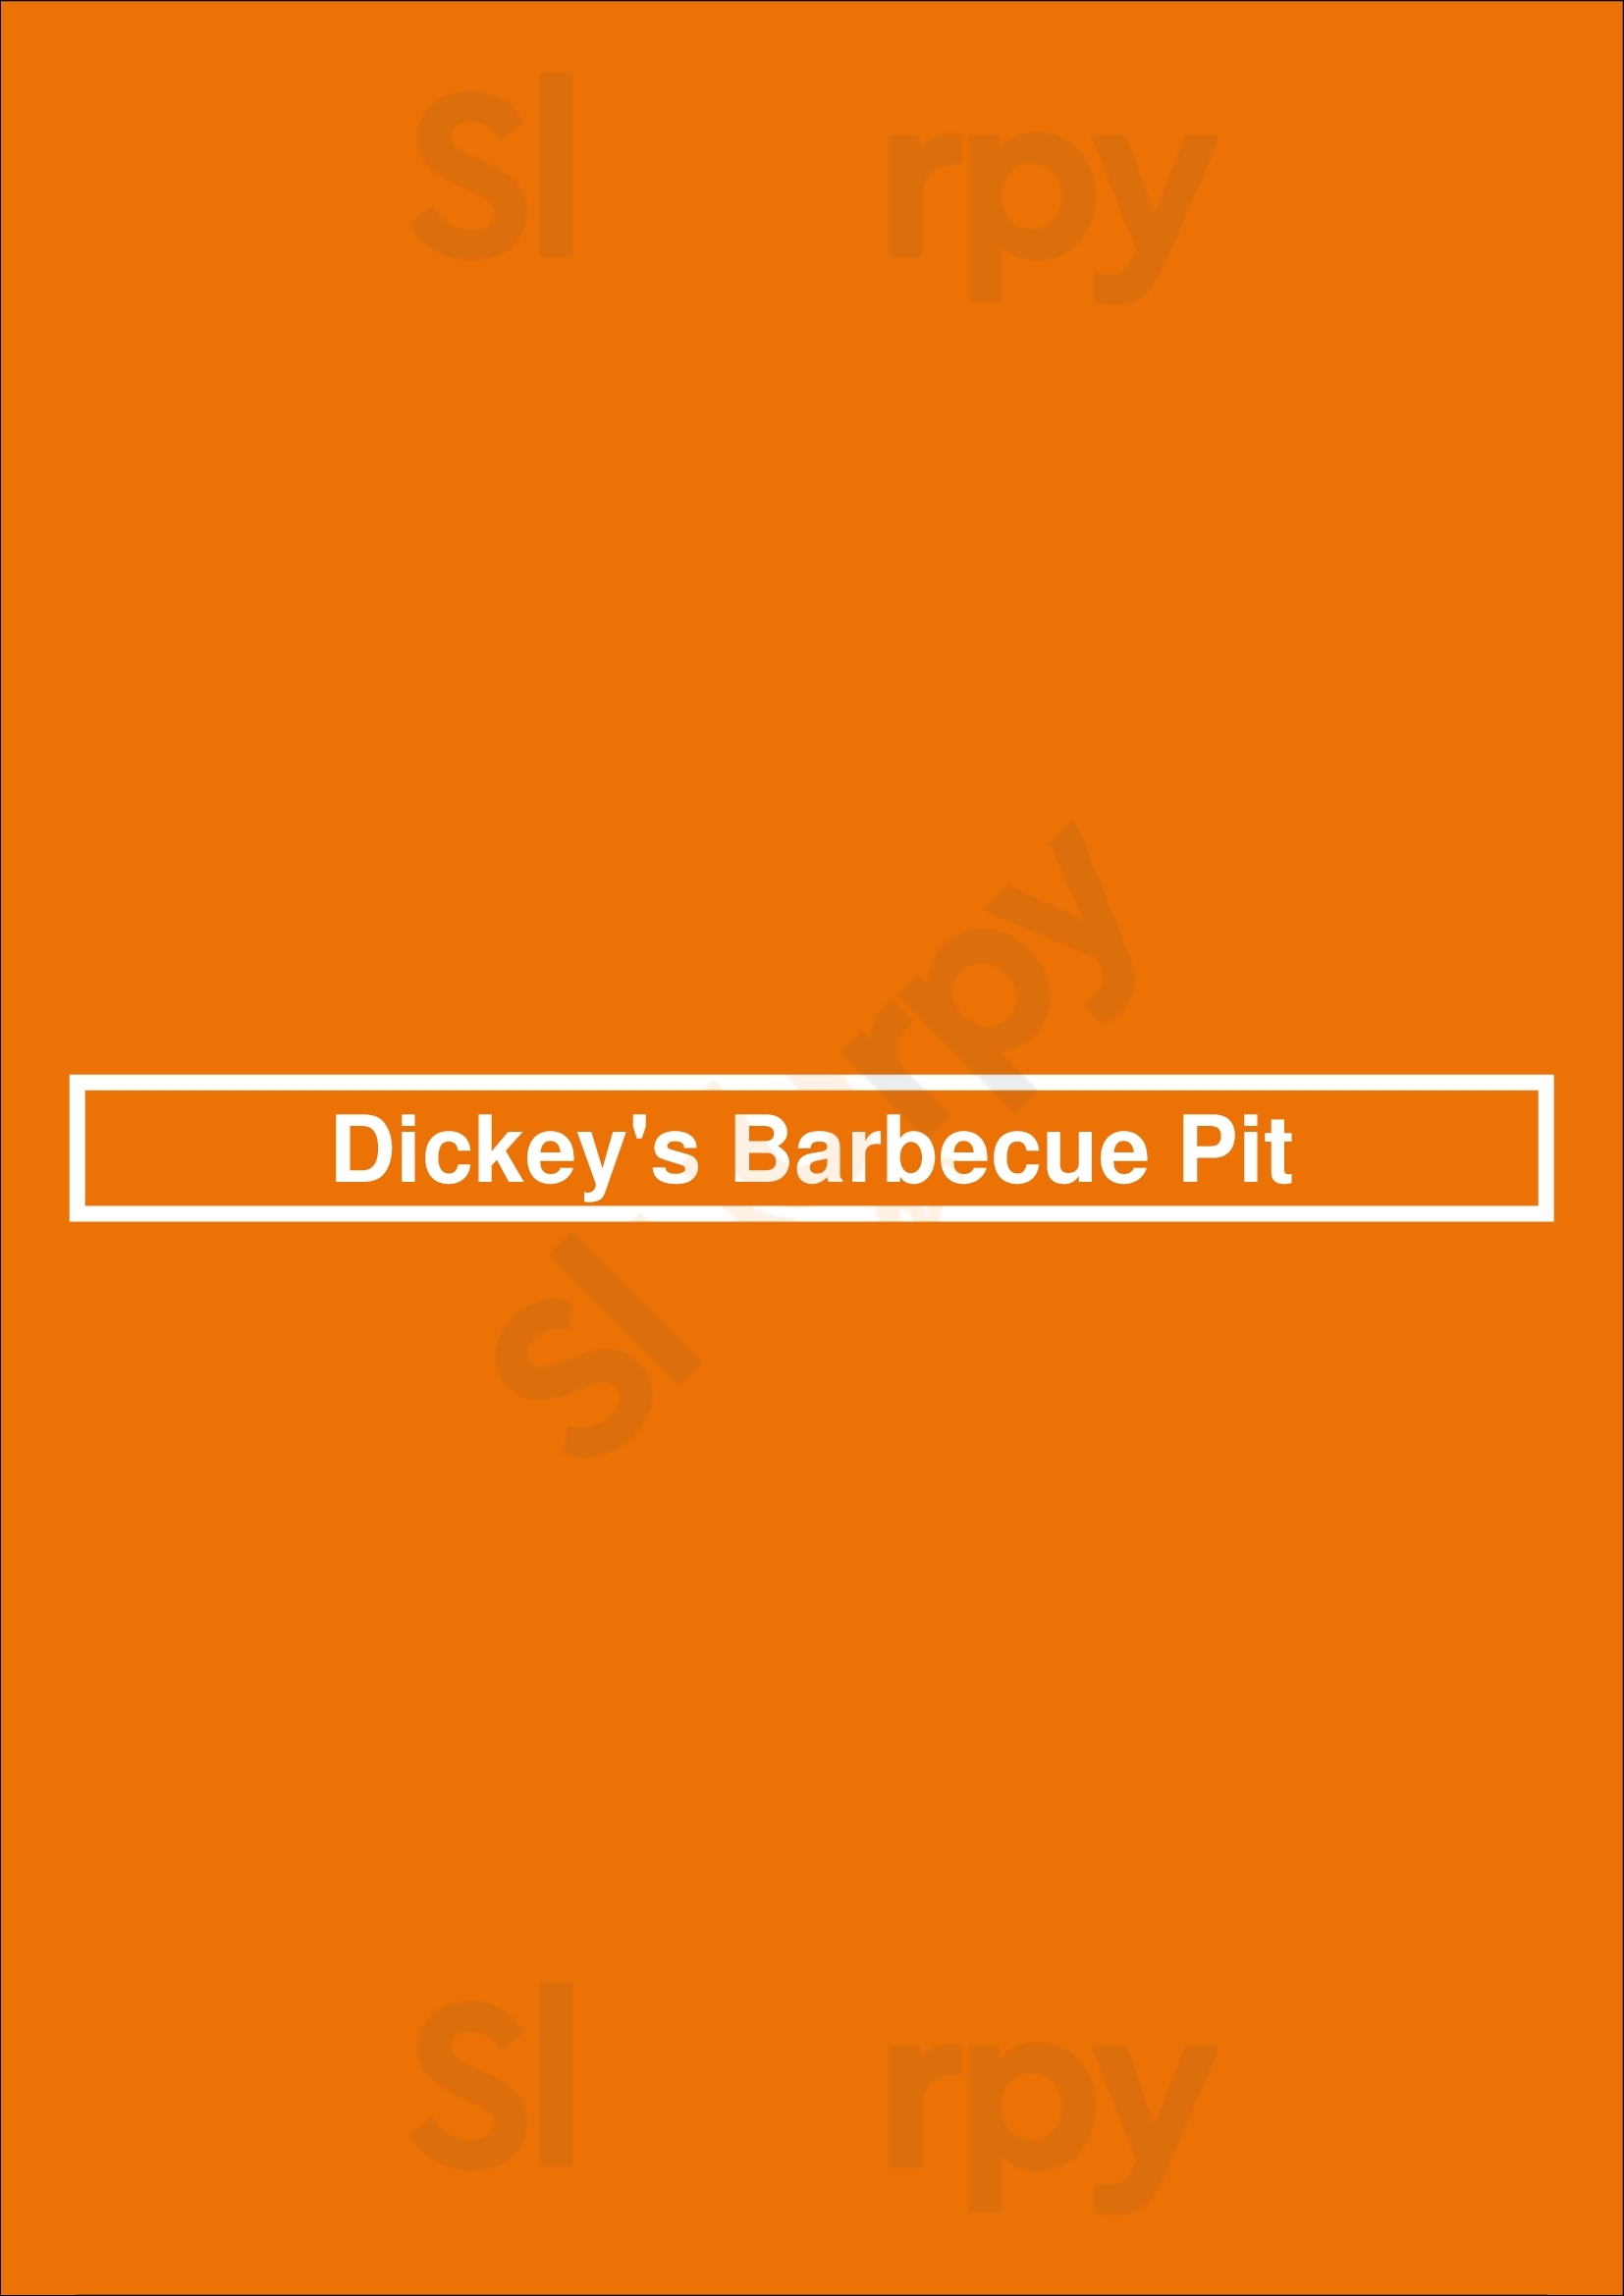 Dickey's Bbq Pit Nampa Menu - 1